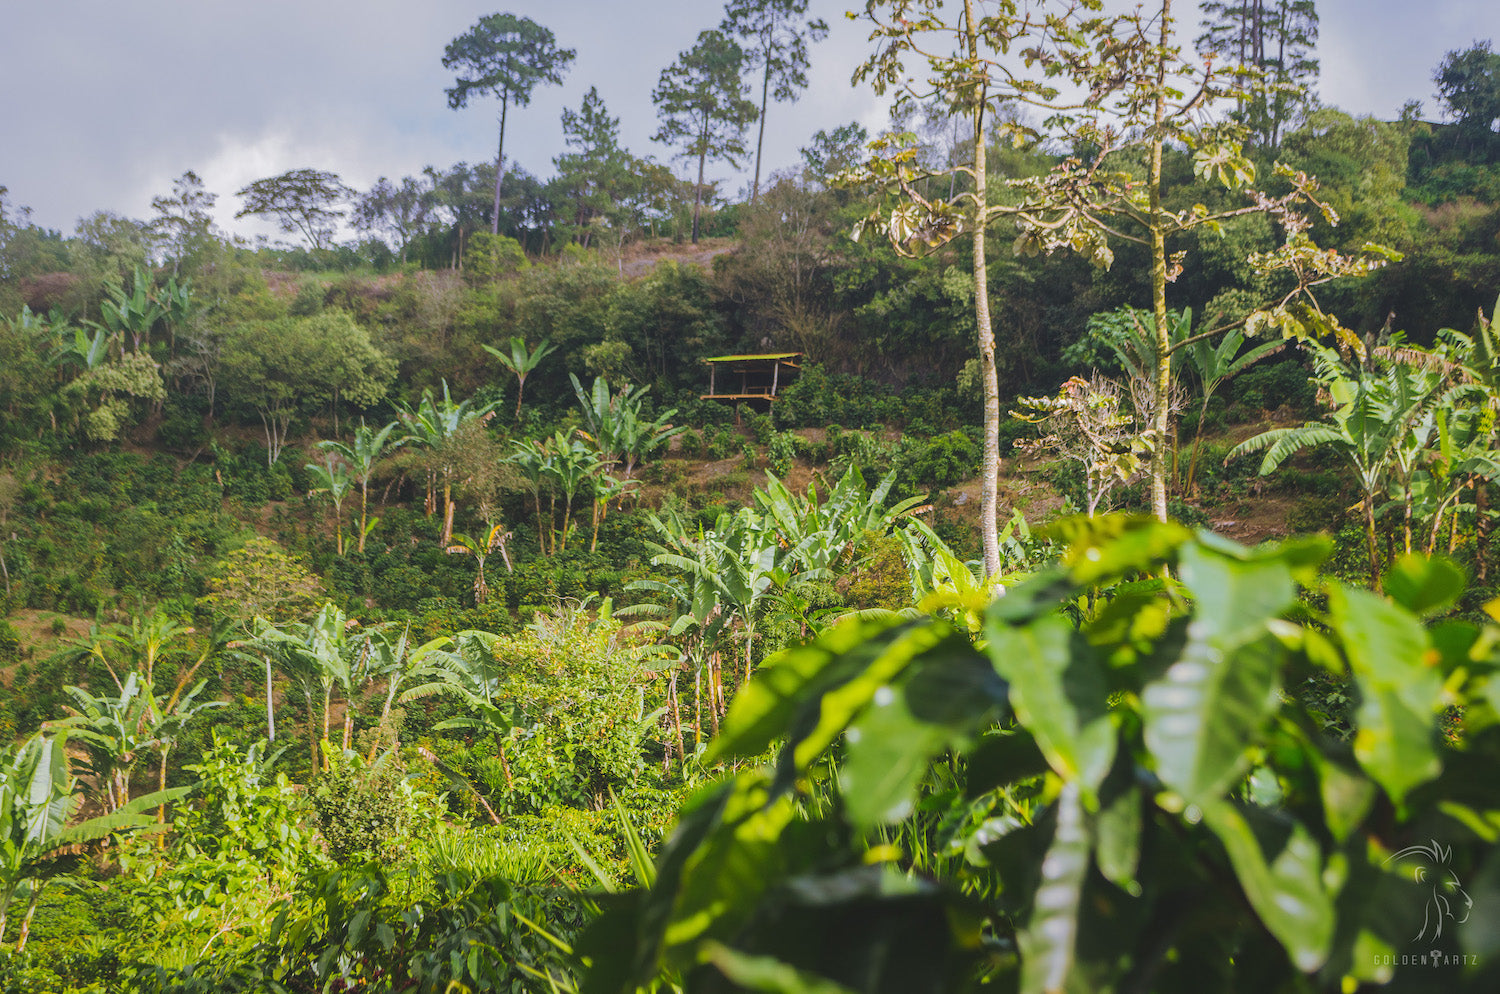 Café Honduras production plantation